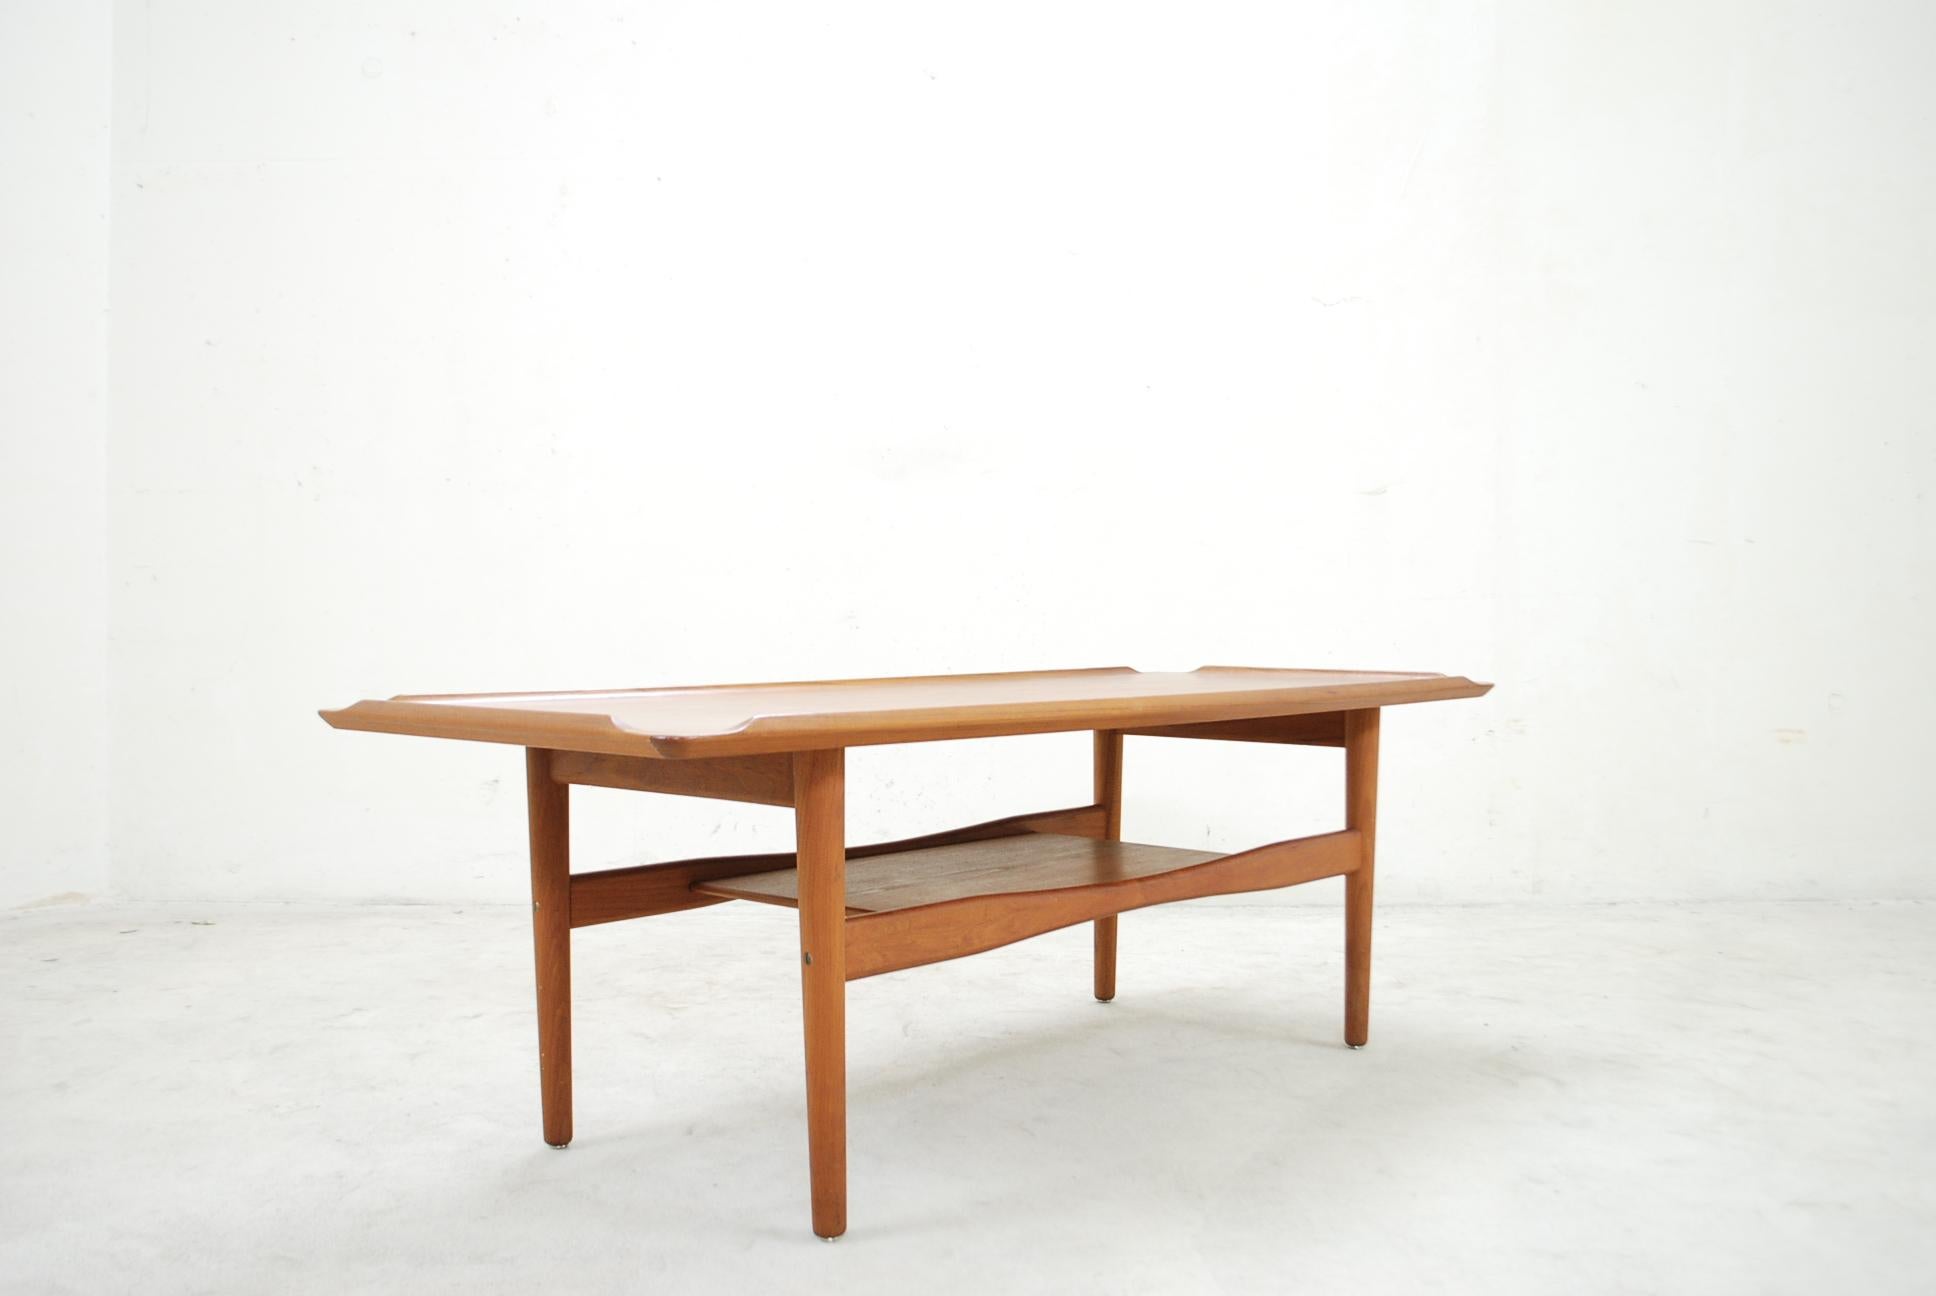 Cette table basse en teck a été conçue par Poul Jensen pour Selig dans les années 1960 au Danemark.
Un complément idéal pour le salon moderne scandinave.
 